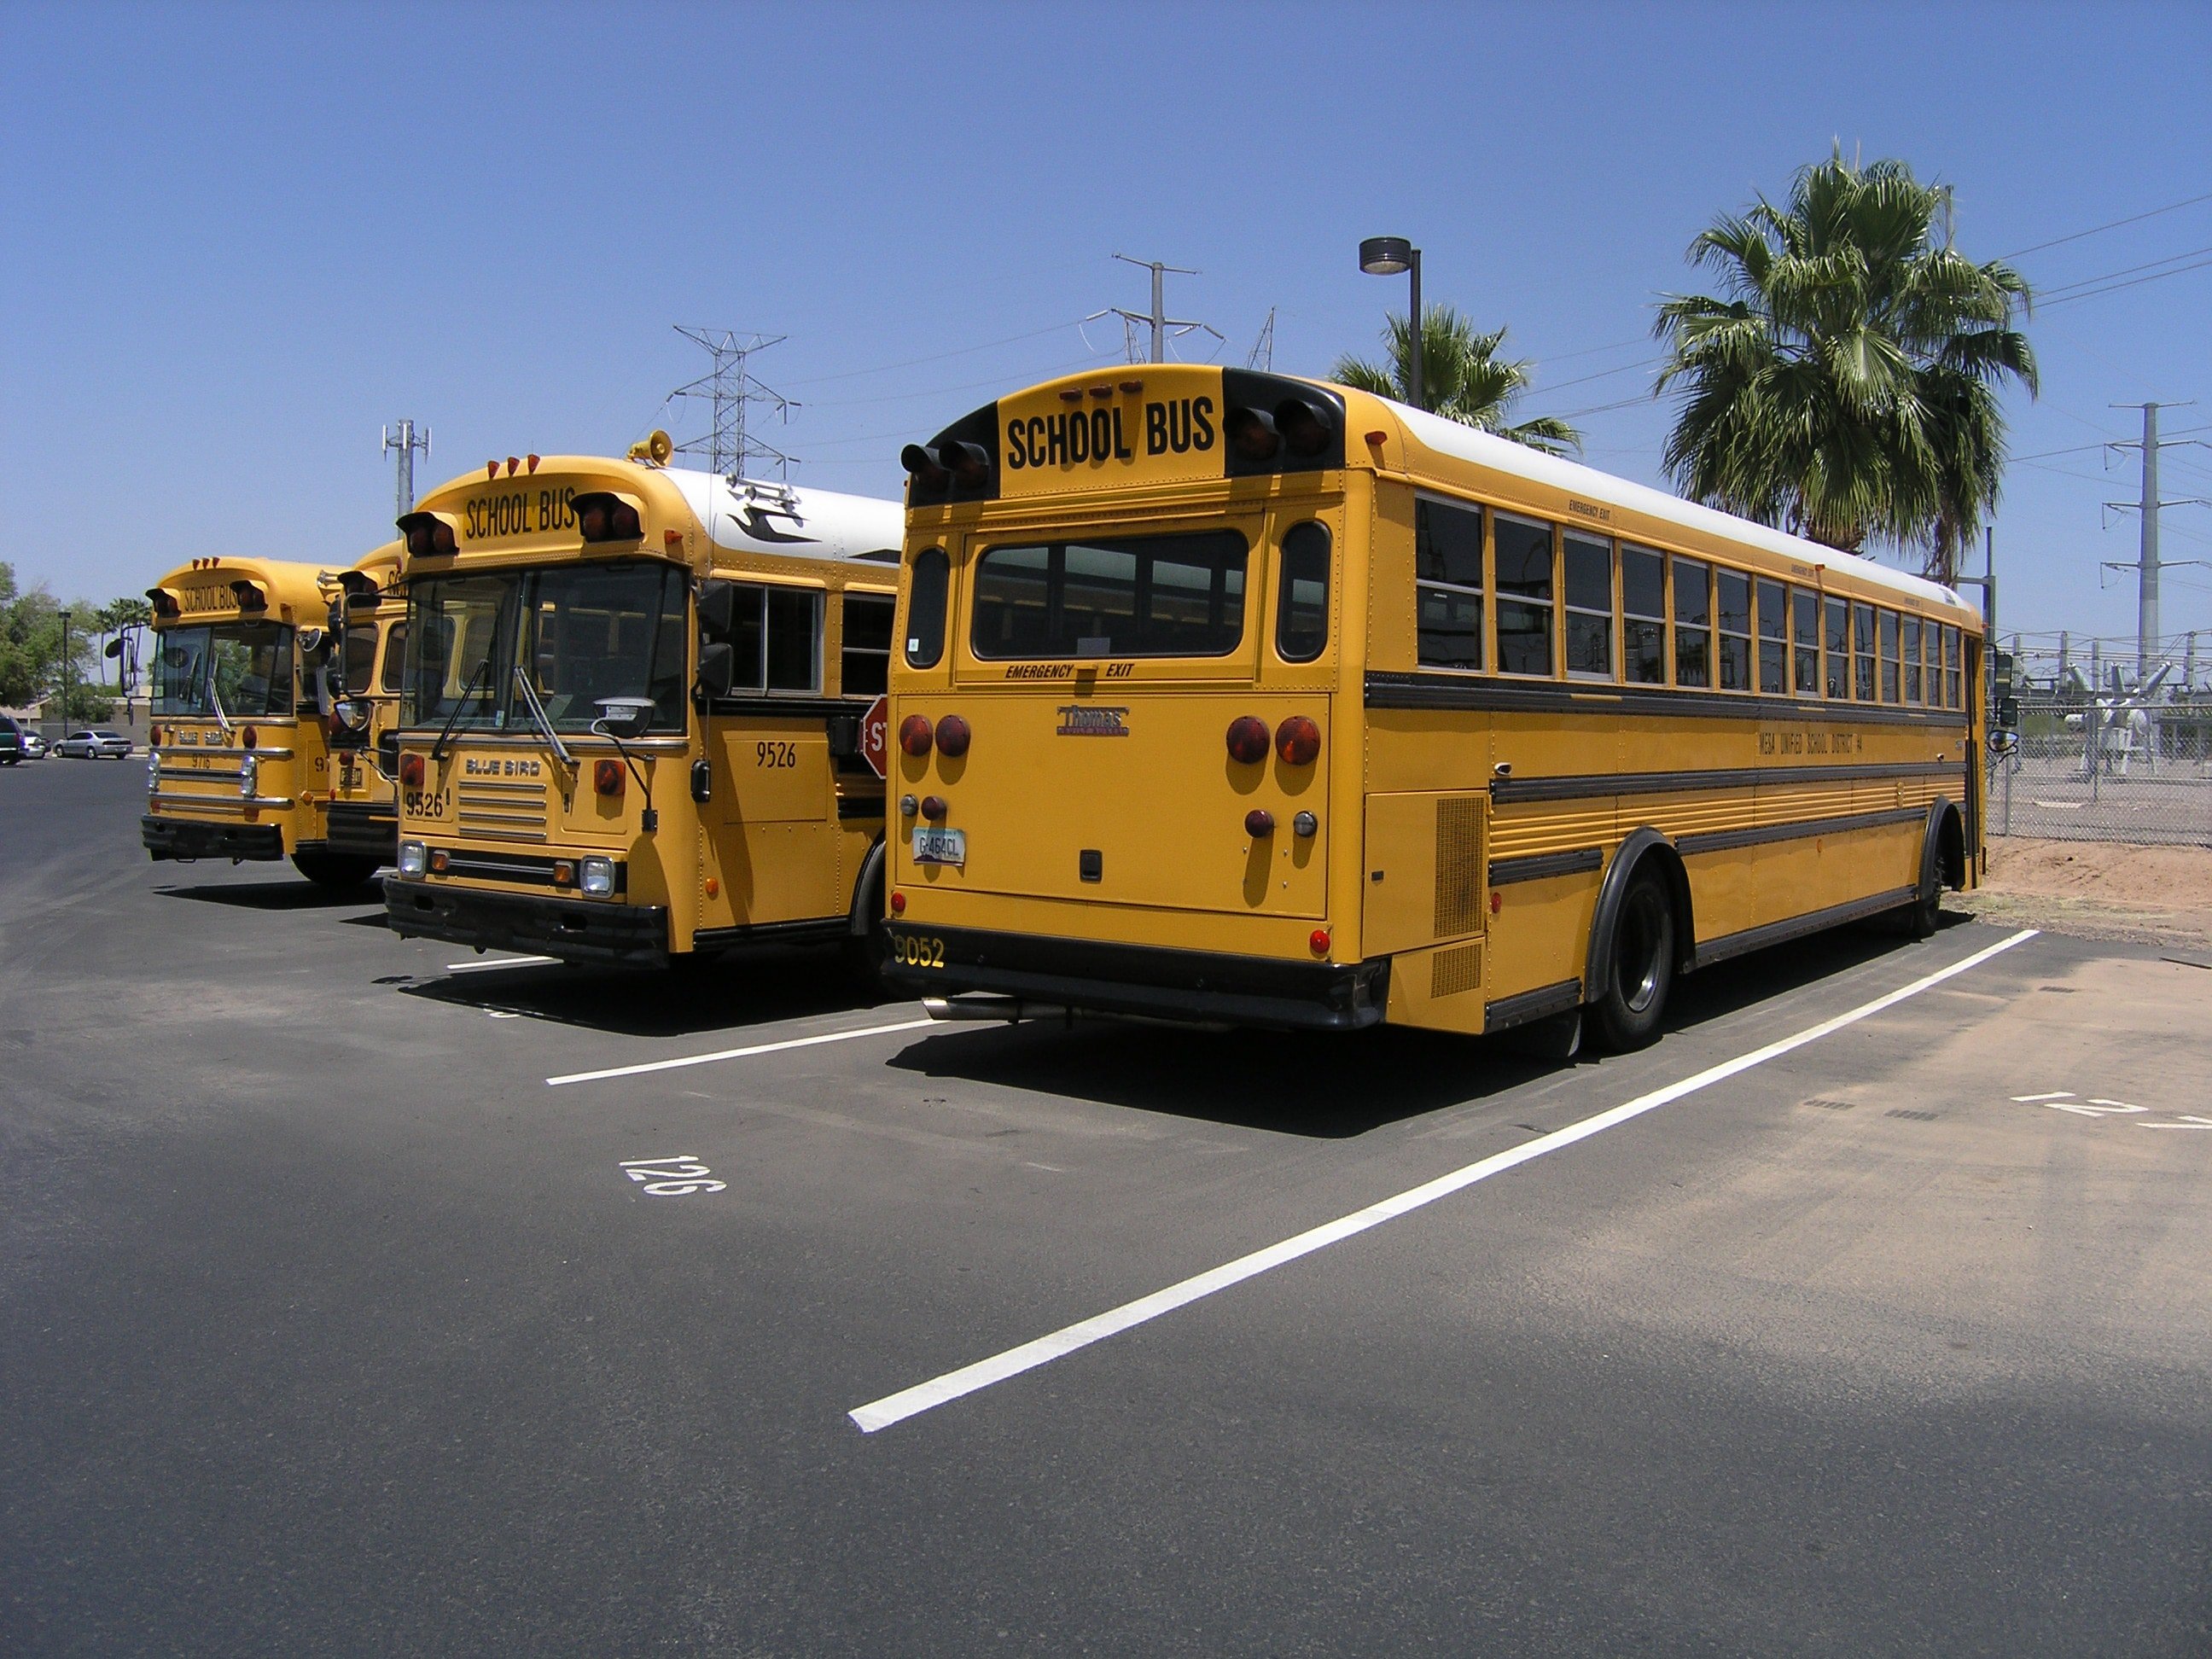 Viele, darunter auch Schulbusfahrer, überschwemmten die Geschichte mit überwältigenden Reaktionen | Quelle: Unsplash